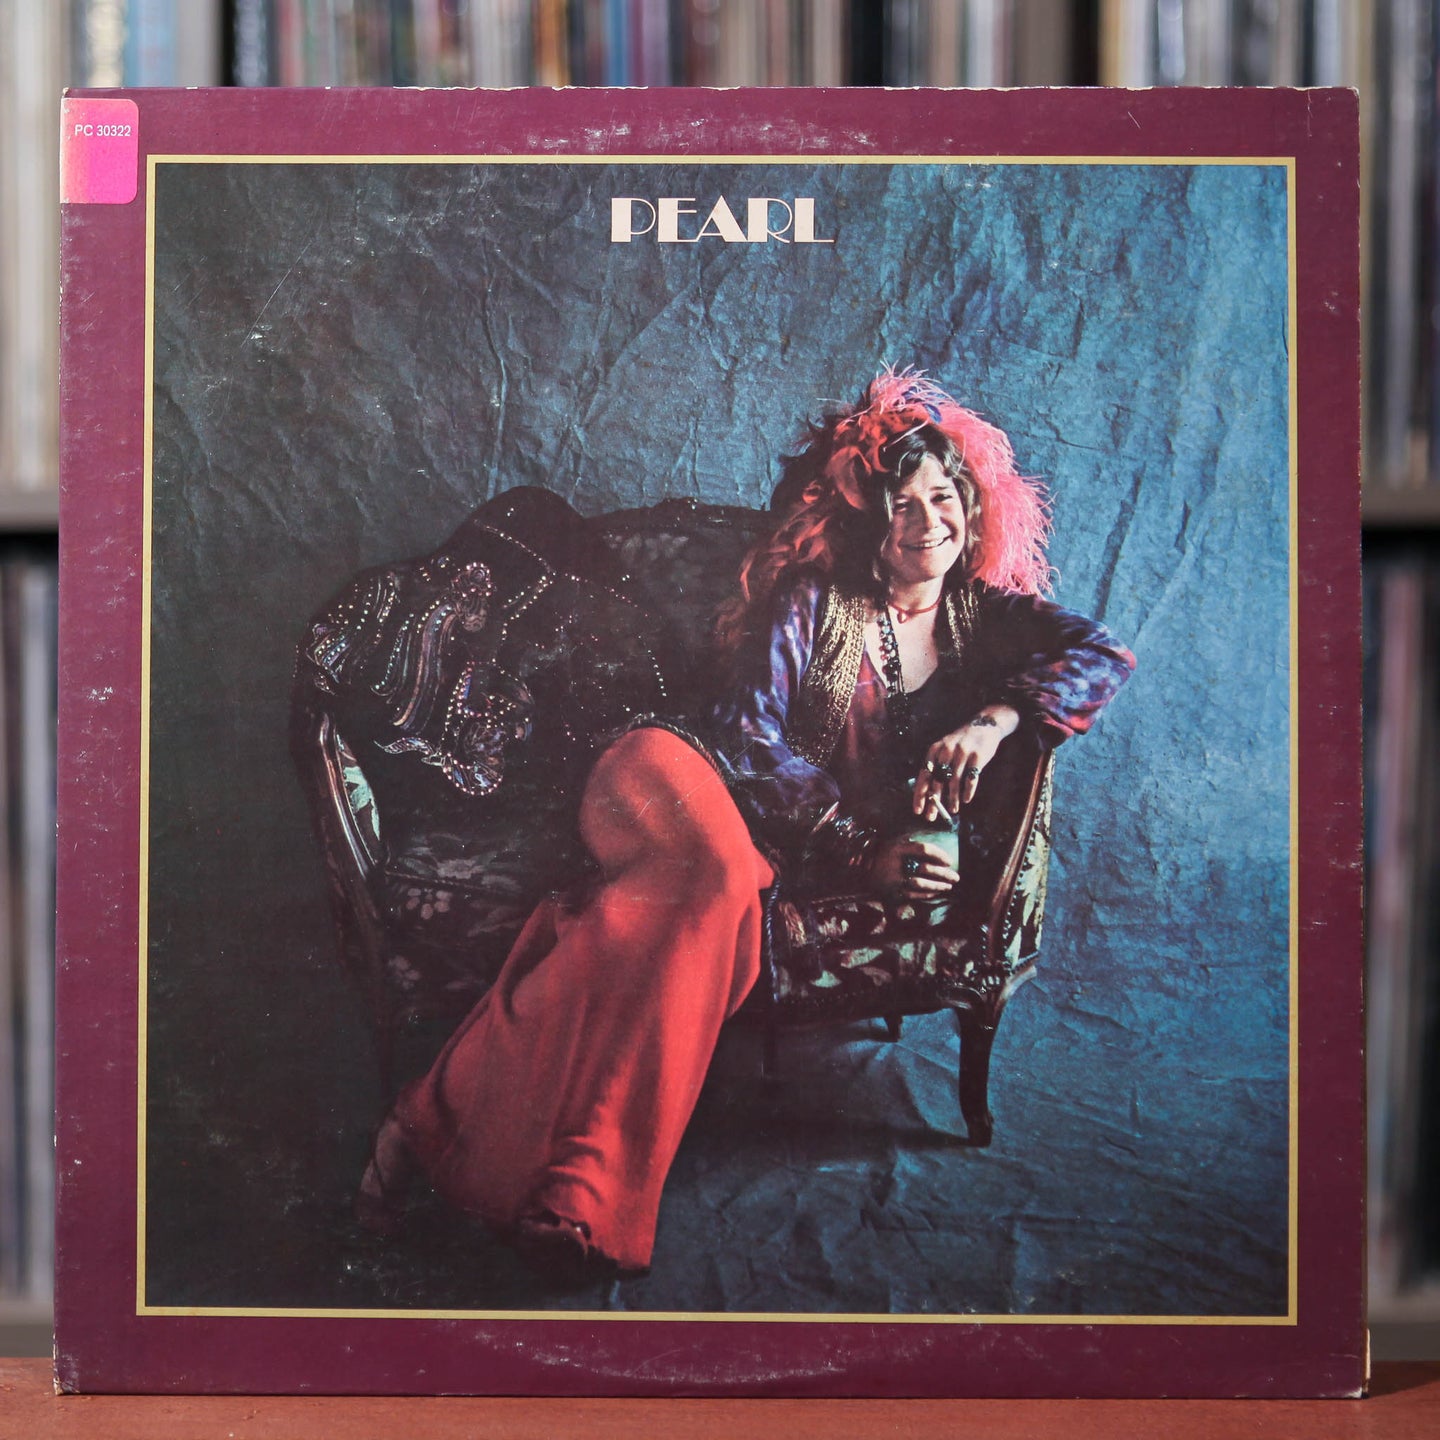 Janis Joplin - Pearl - 1971 Columbia, VG/VG+